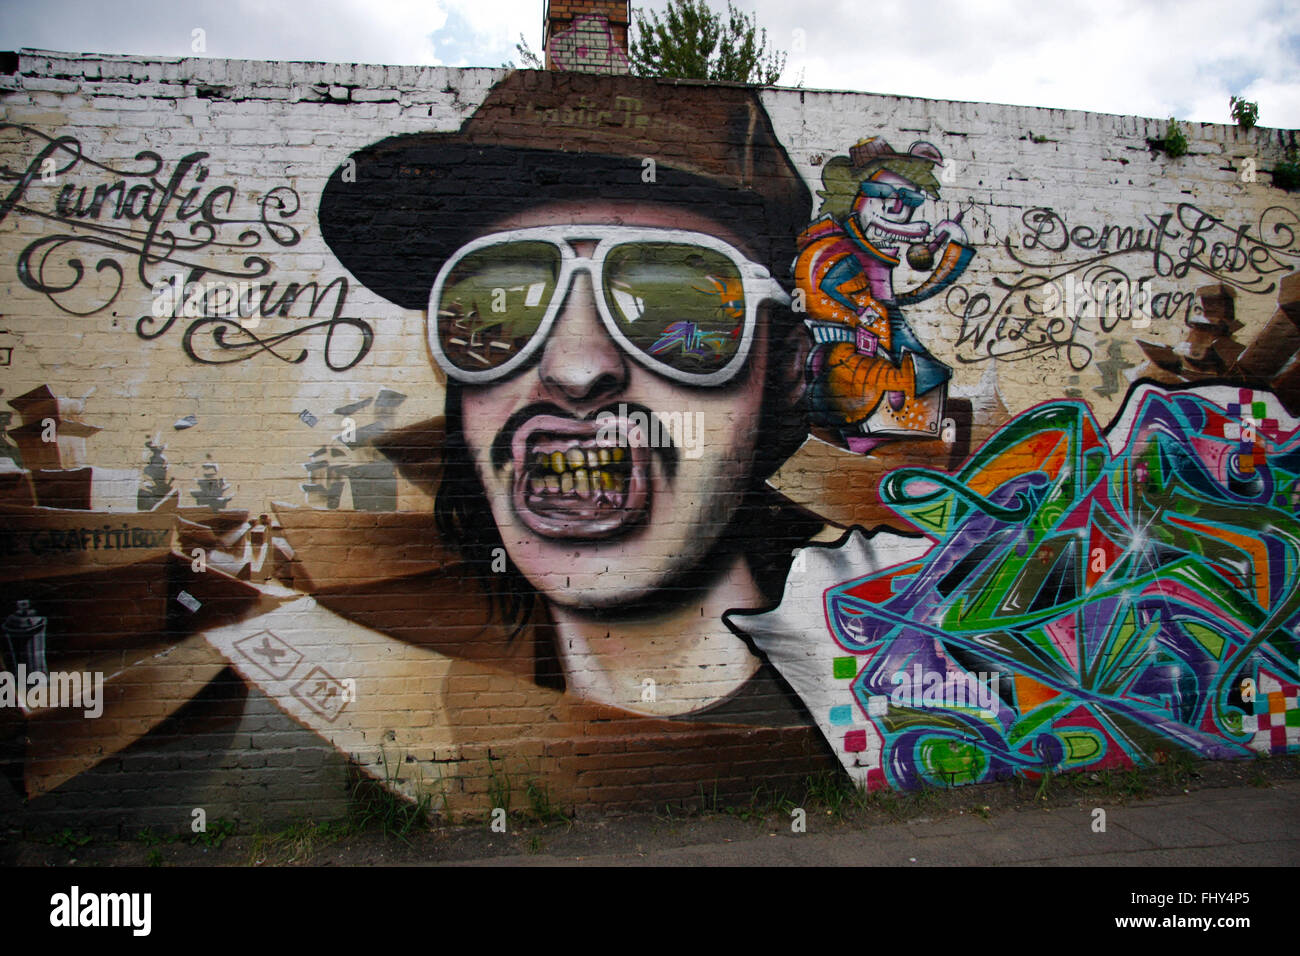 Graffities, Berlin-Friedrichshain. Stock Photo